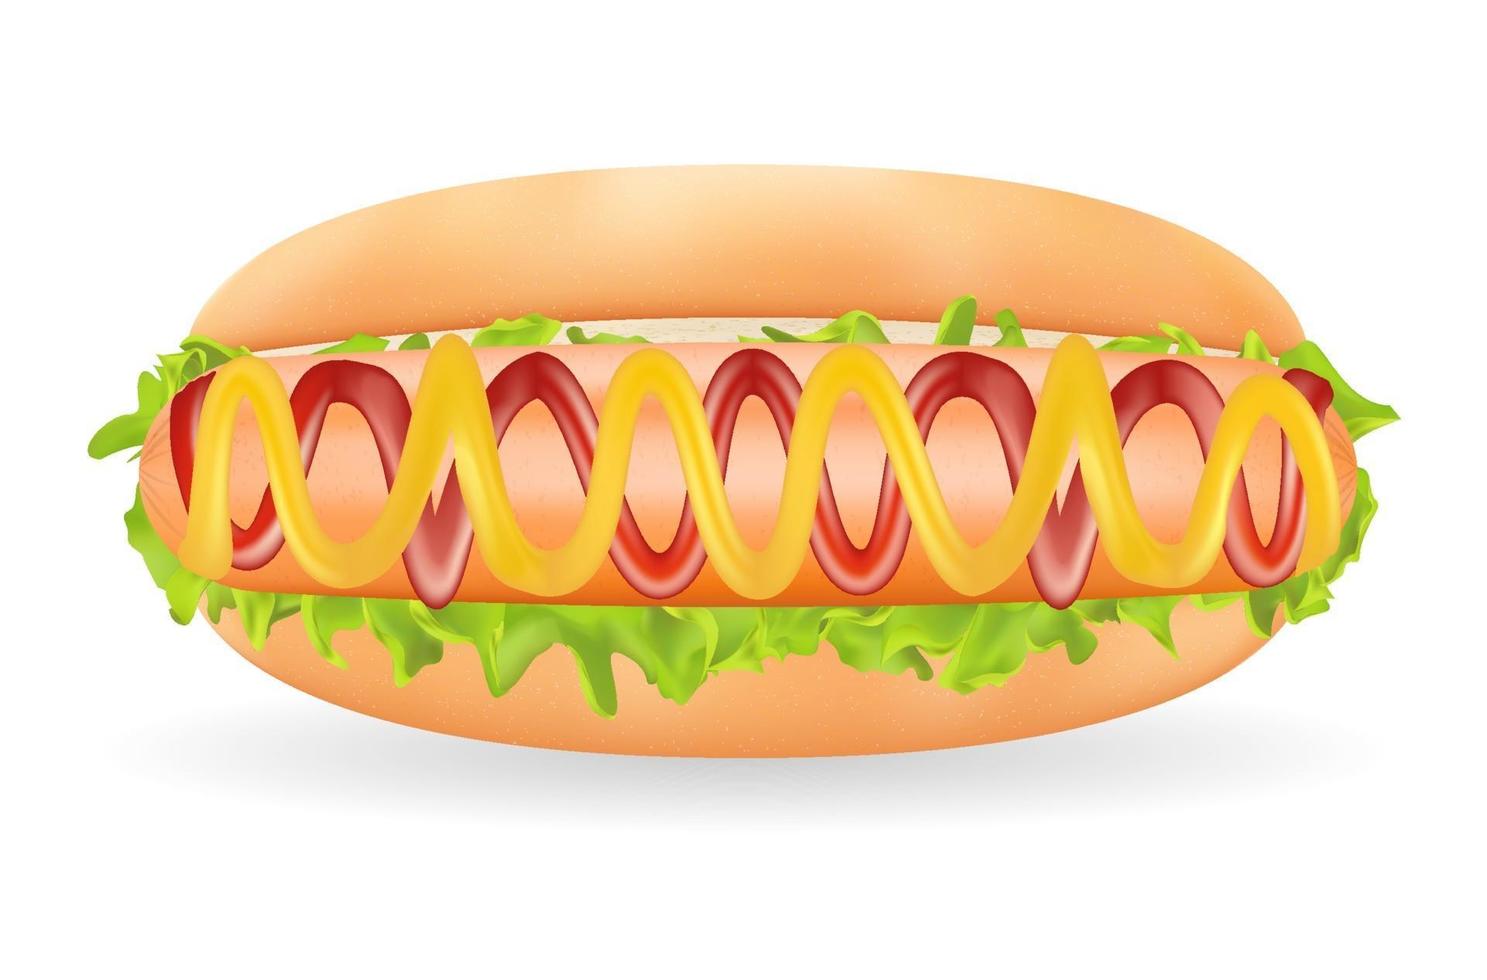 echte Hot Dog Wurst mit Sauce in einem Brot auf einem weißen Hintergrund vektor